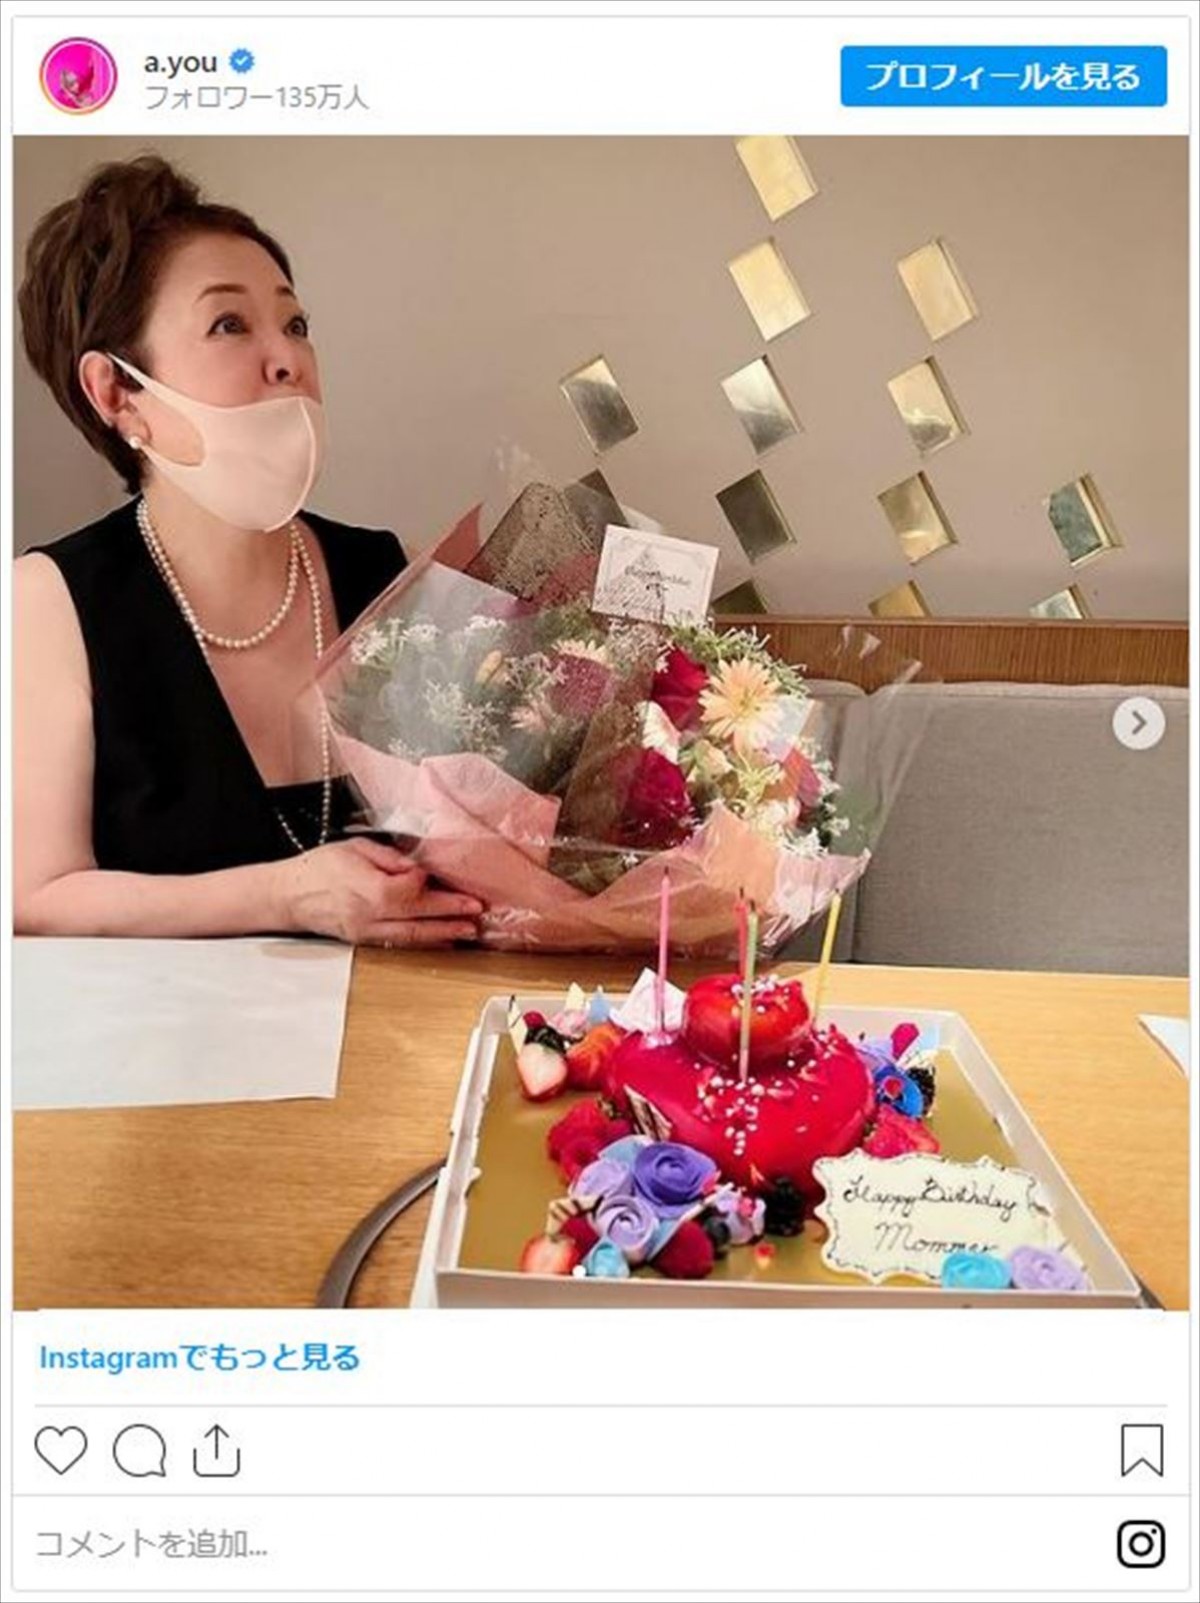 浜崎あゆみ、実母の誕生日をお祝い「唯一無二のオーラを纏うひと」